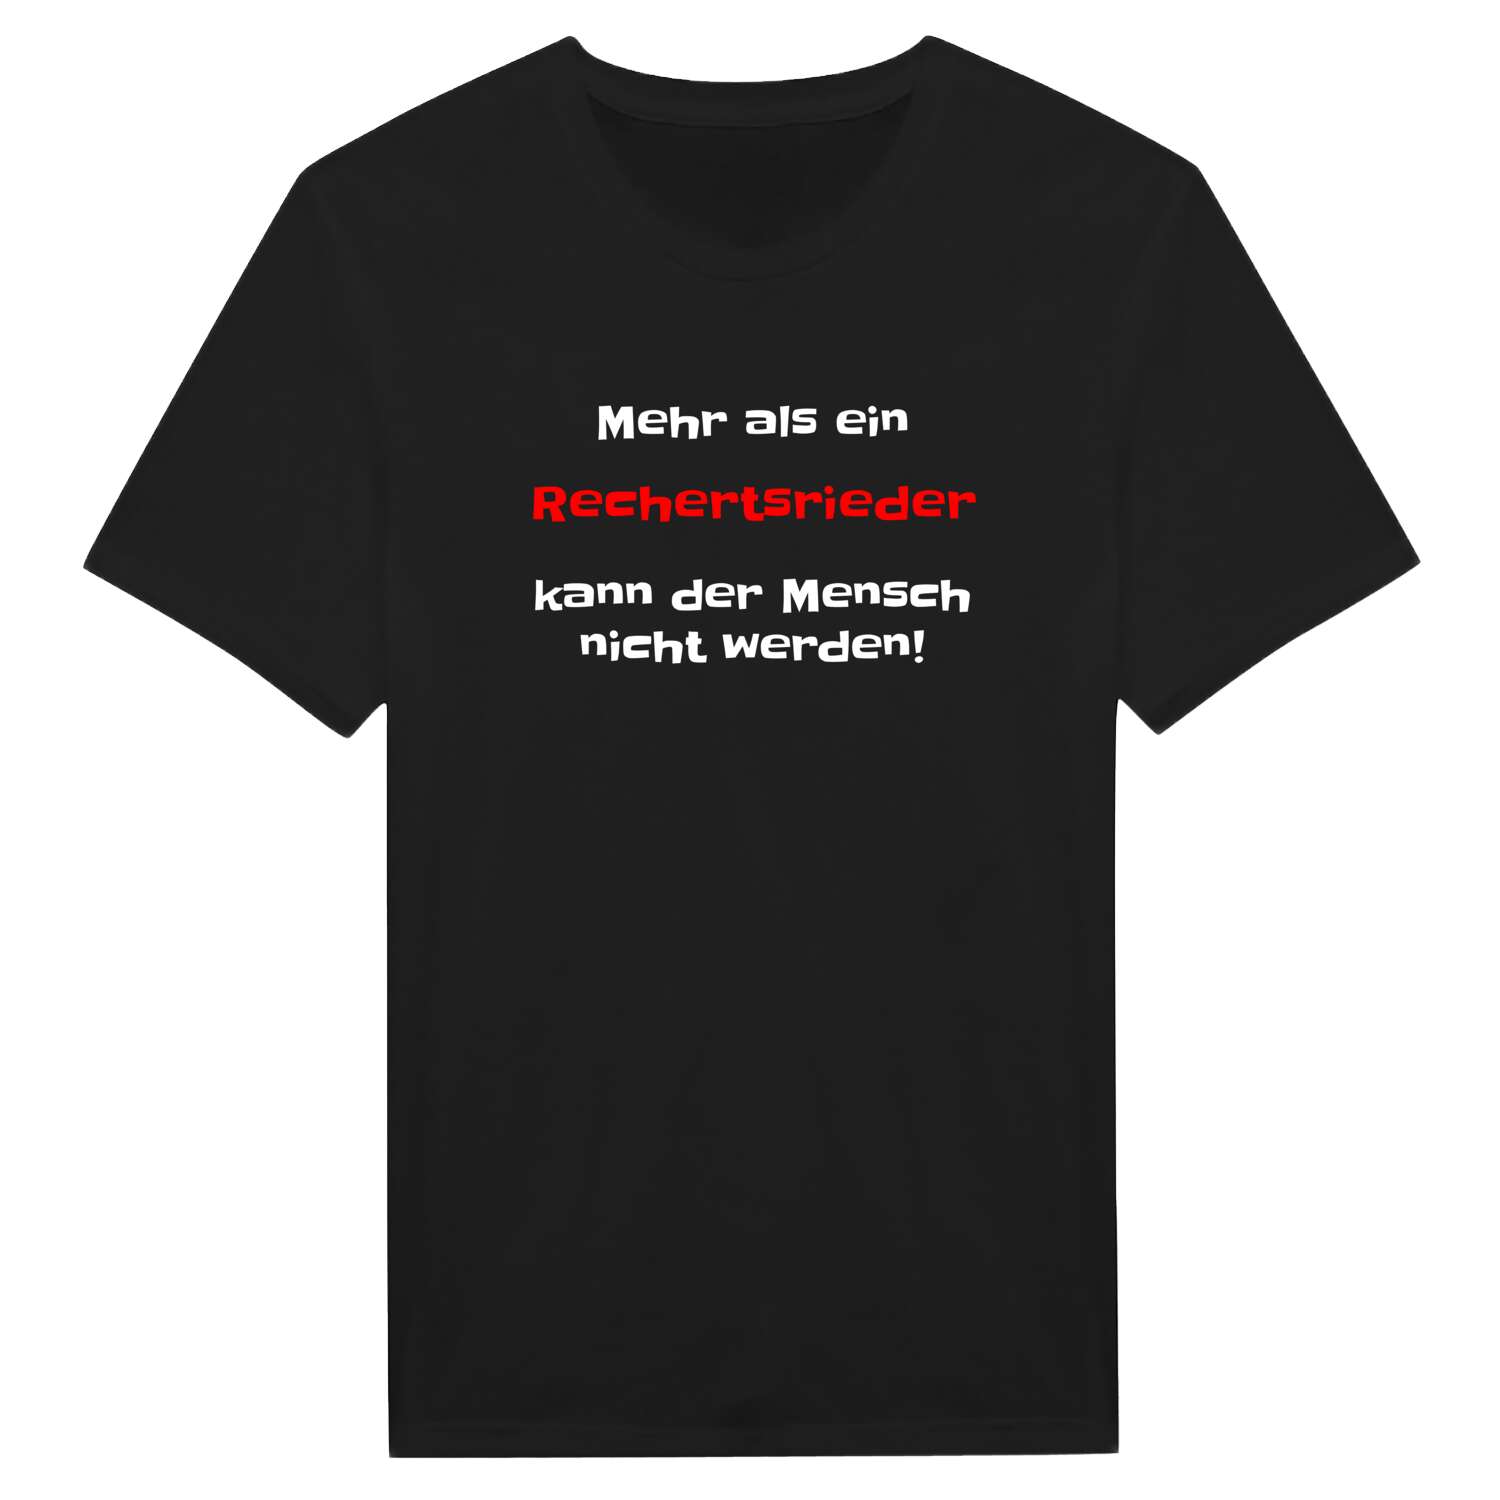 Rechertsried T-Shirt »Mehr als ein«